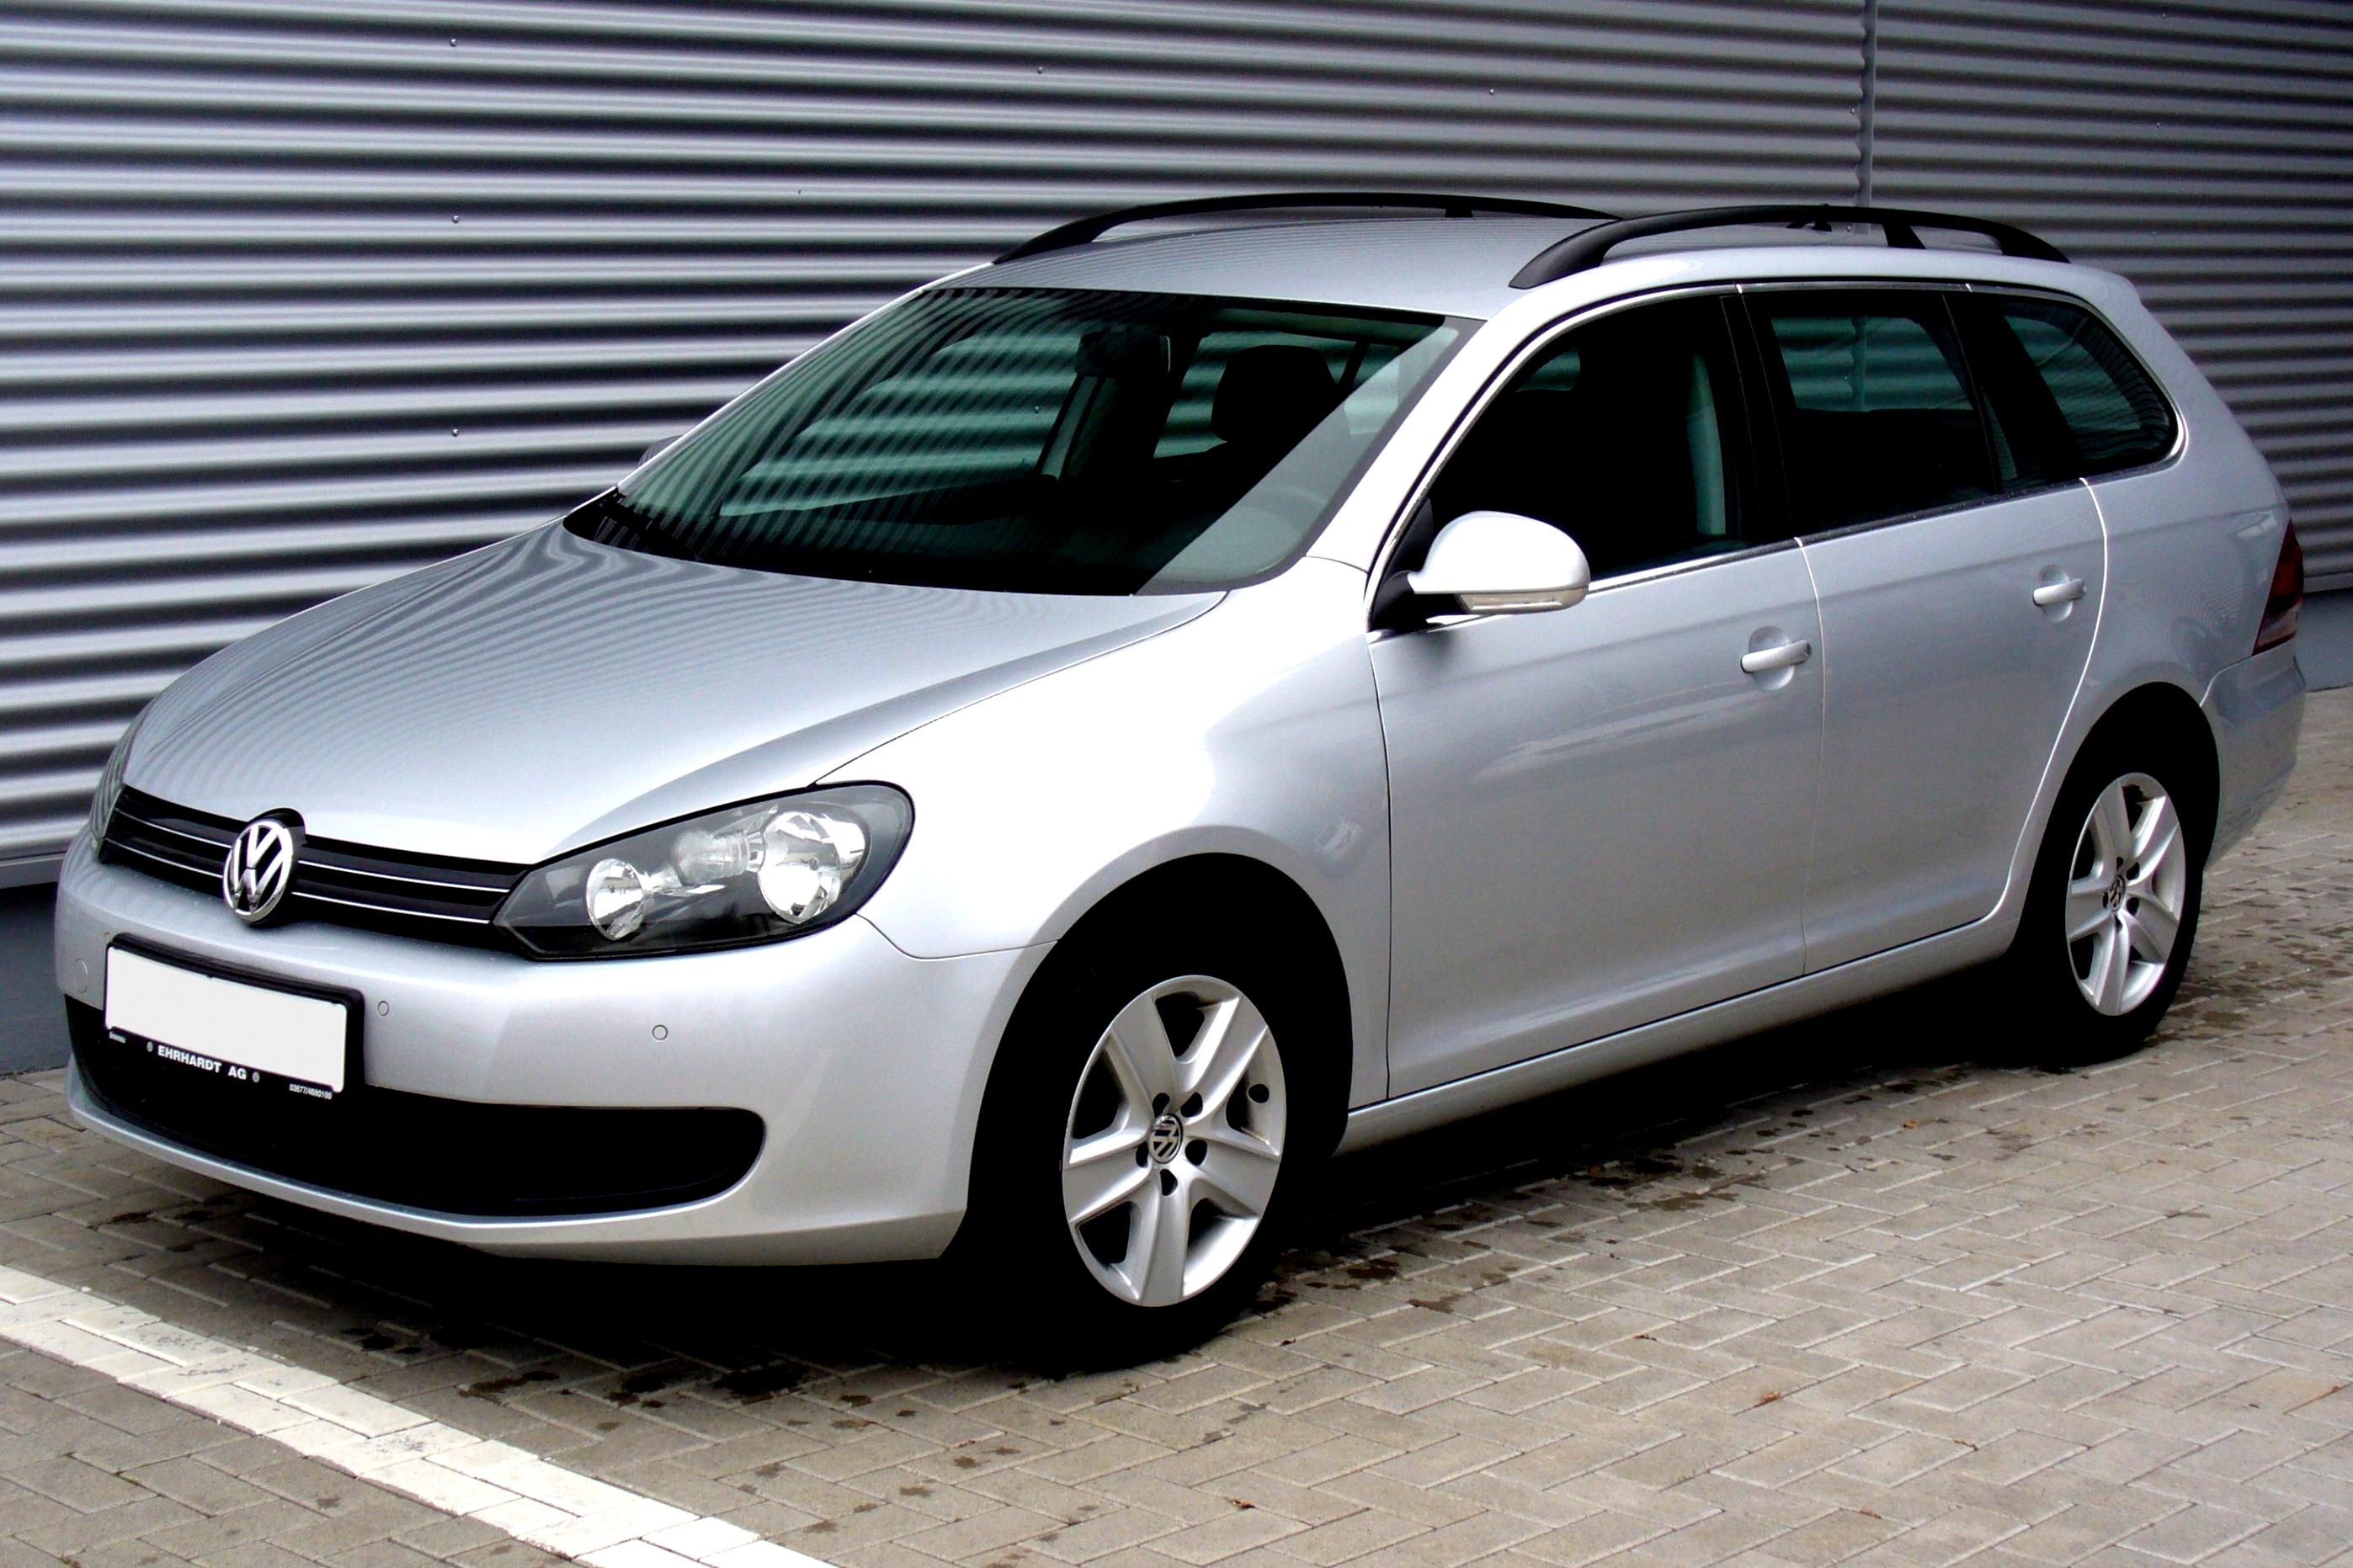 Гольф 6 универсал. Volkswagen Golf 6 универсал. Volkswagen Golf универсал 2008. Volkswagen Golf 6 variant. Volkswagen Golf 6 variant 2008.